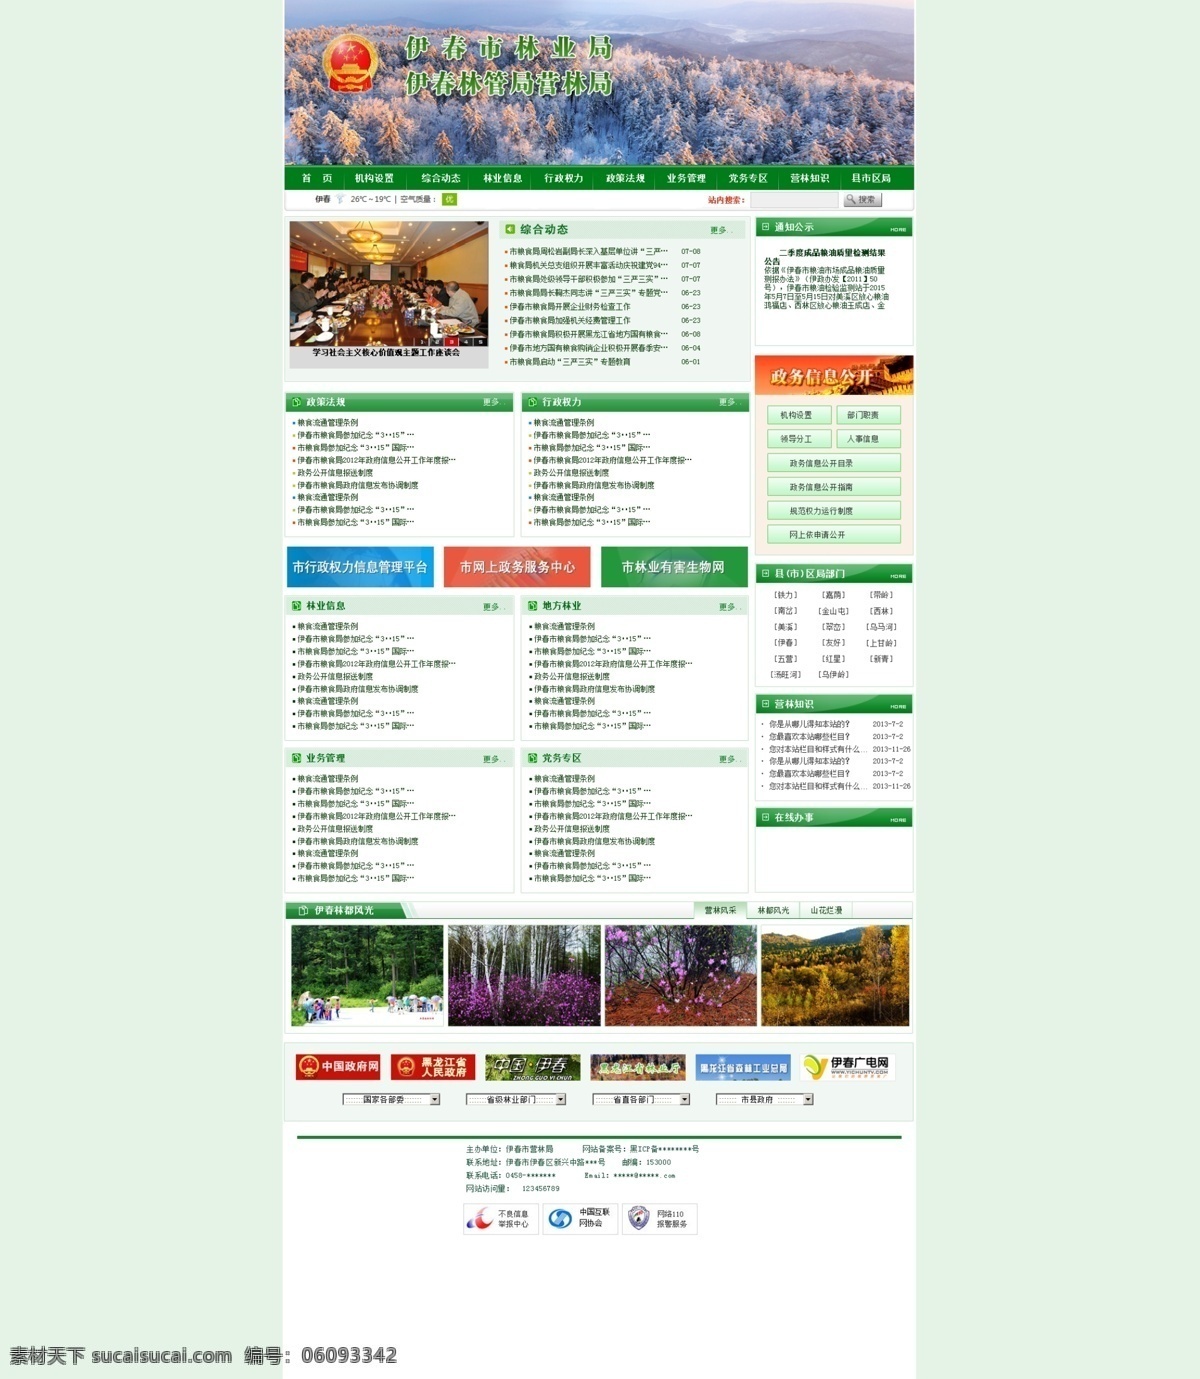 营林 局 网站首页 模板 营林局 林业局 网站 网页 绿色 web 界面设计 中文模板 白色